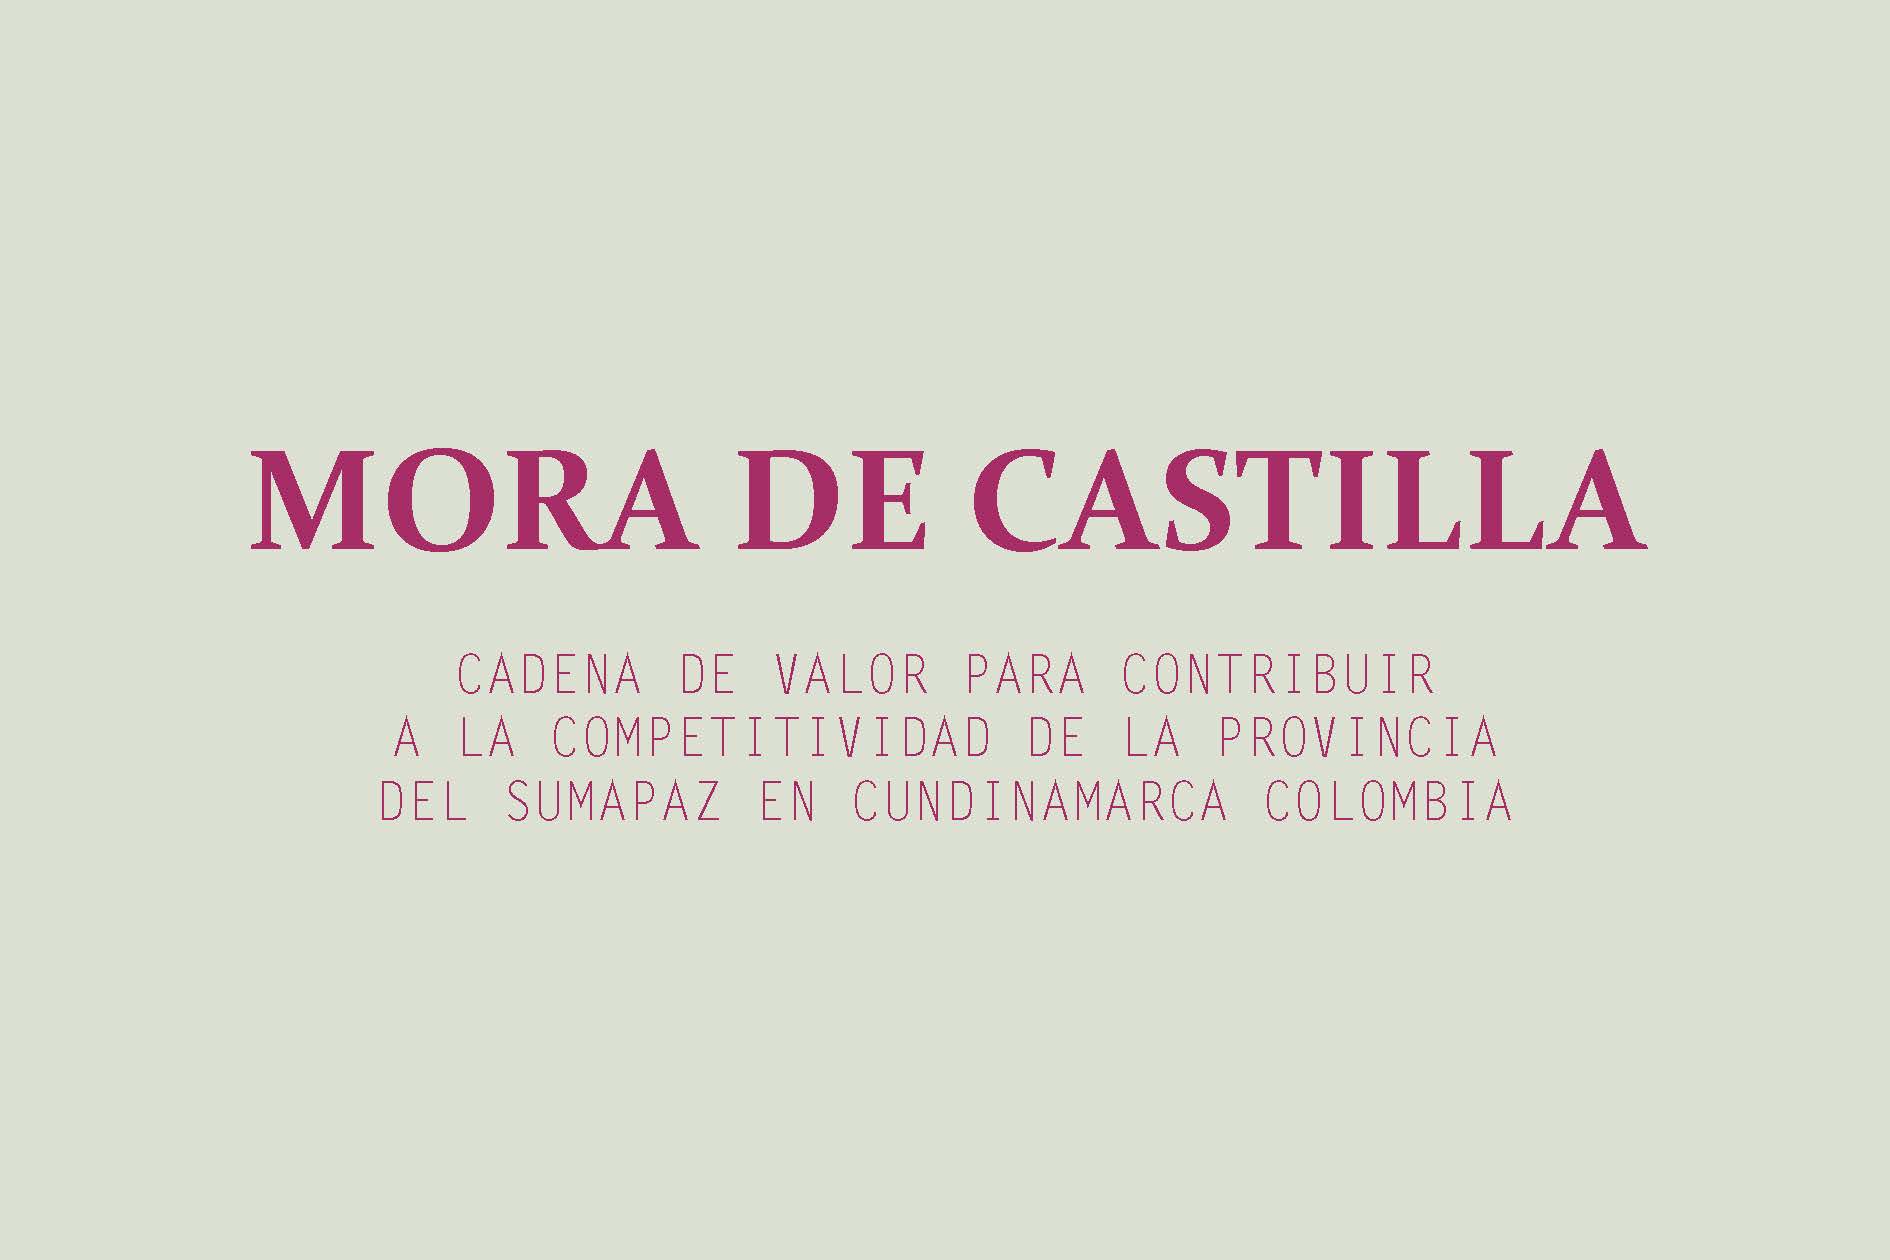 MORA DE CASTILLA: CADENA DE VALOR PARA CONTRIBUIR A LA COMPETITIVIDAD DE LA PROVINCIA DEL SUMAPAZ EN CUNDINAMARCA COLOMBIA